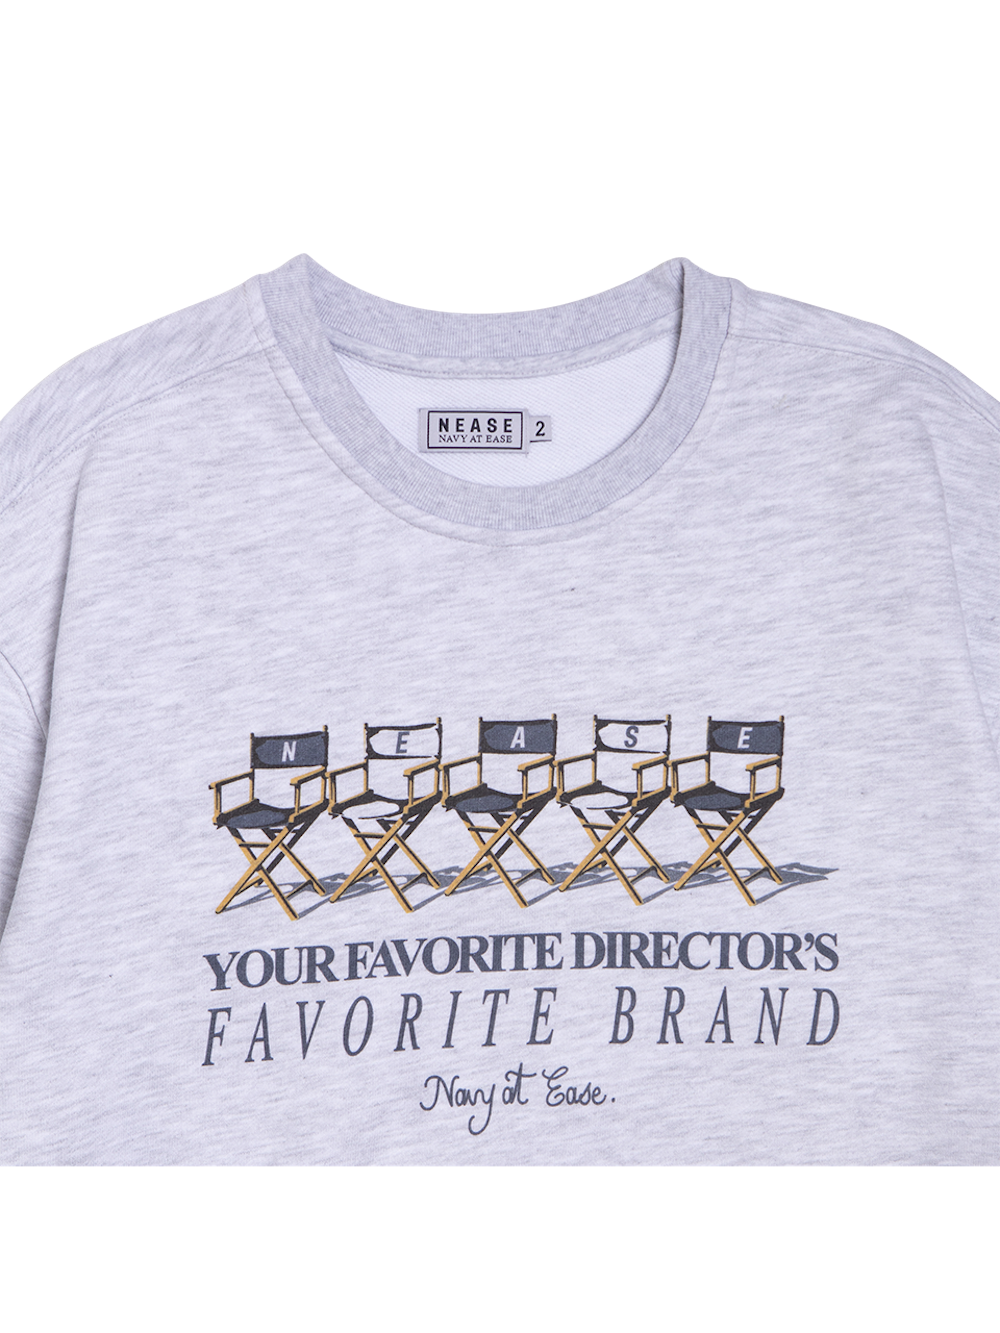 Director's crewneck sweatshirt